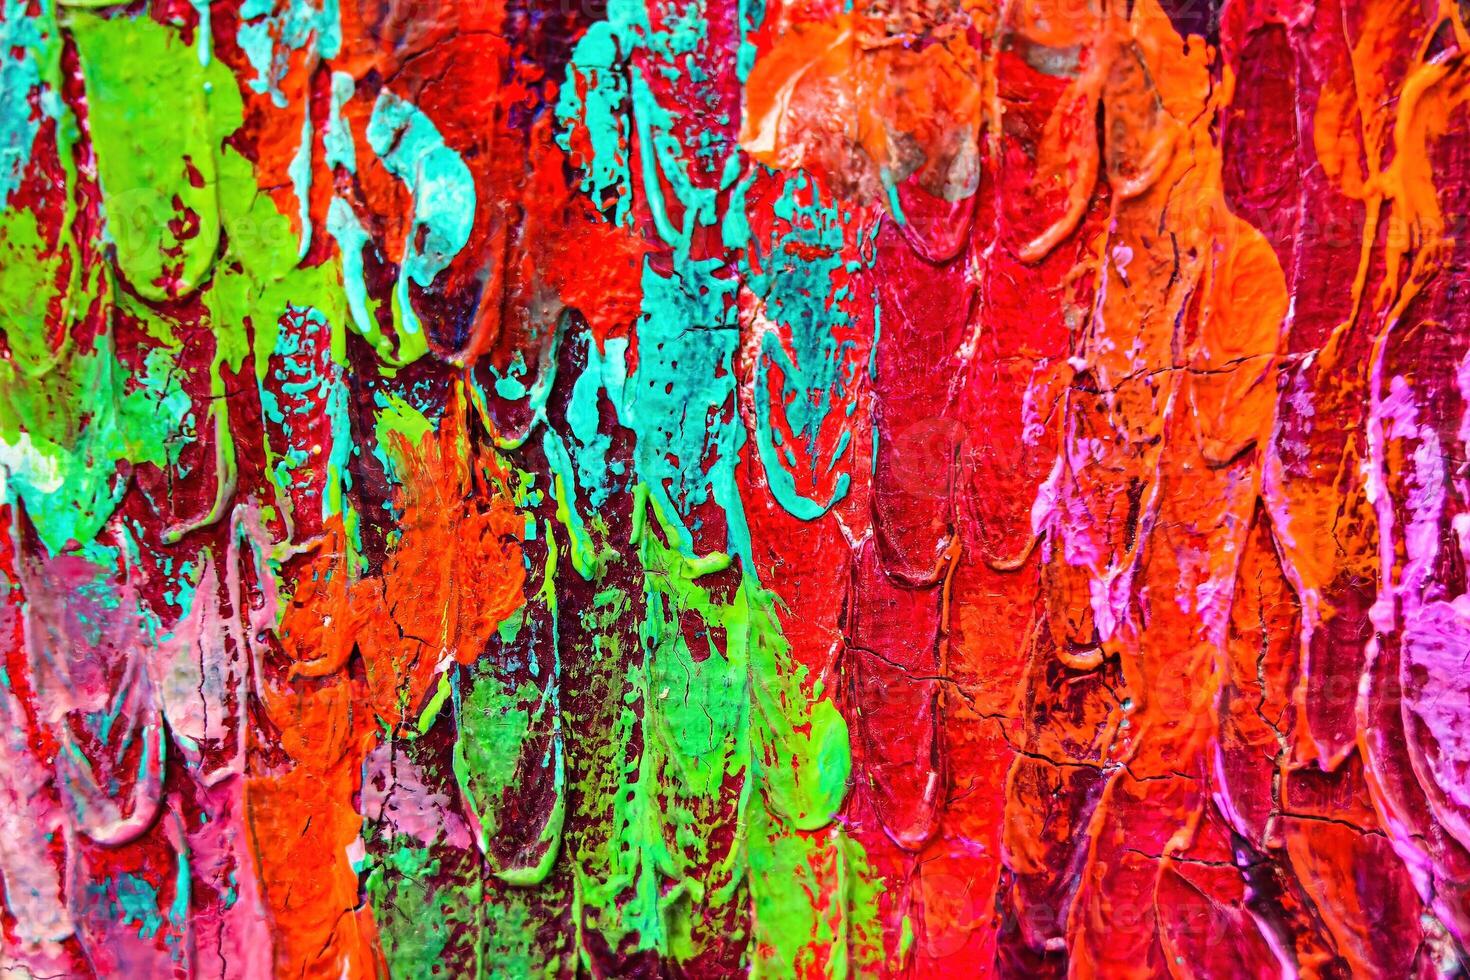 colorida abstrato óleo pintura arte fundo. textura do tela de pintura e óleo. foto